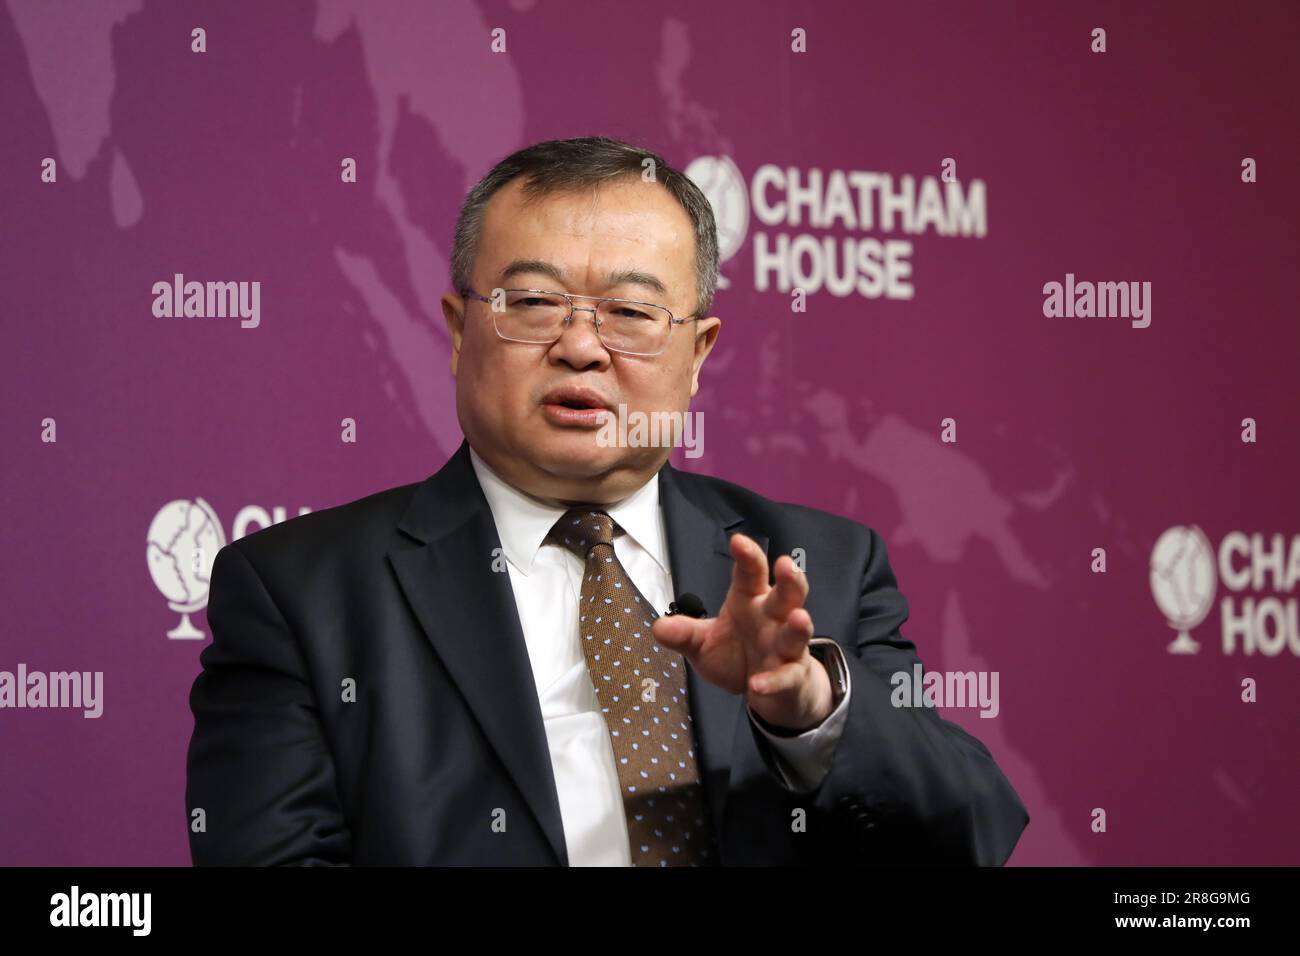 Liu Jianchao, ministre du Département international du Parti communiste chinois, s'est exprimé à Chatham House à Londres, au Royaume-Uni, le 21 juin 2023 Banque D'Images